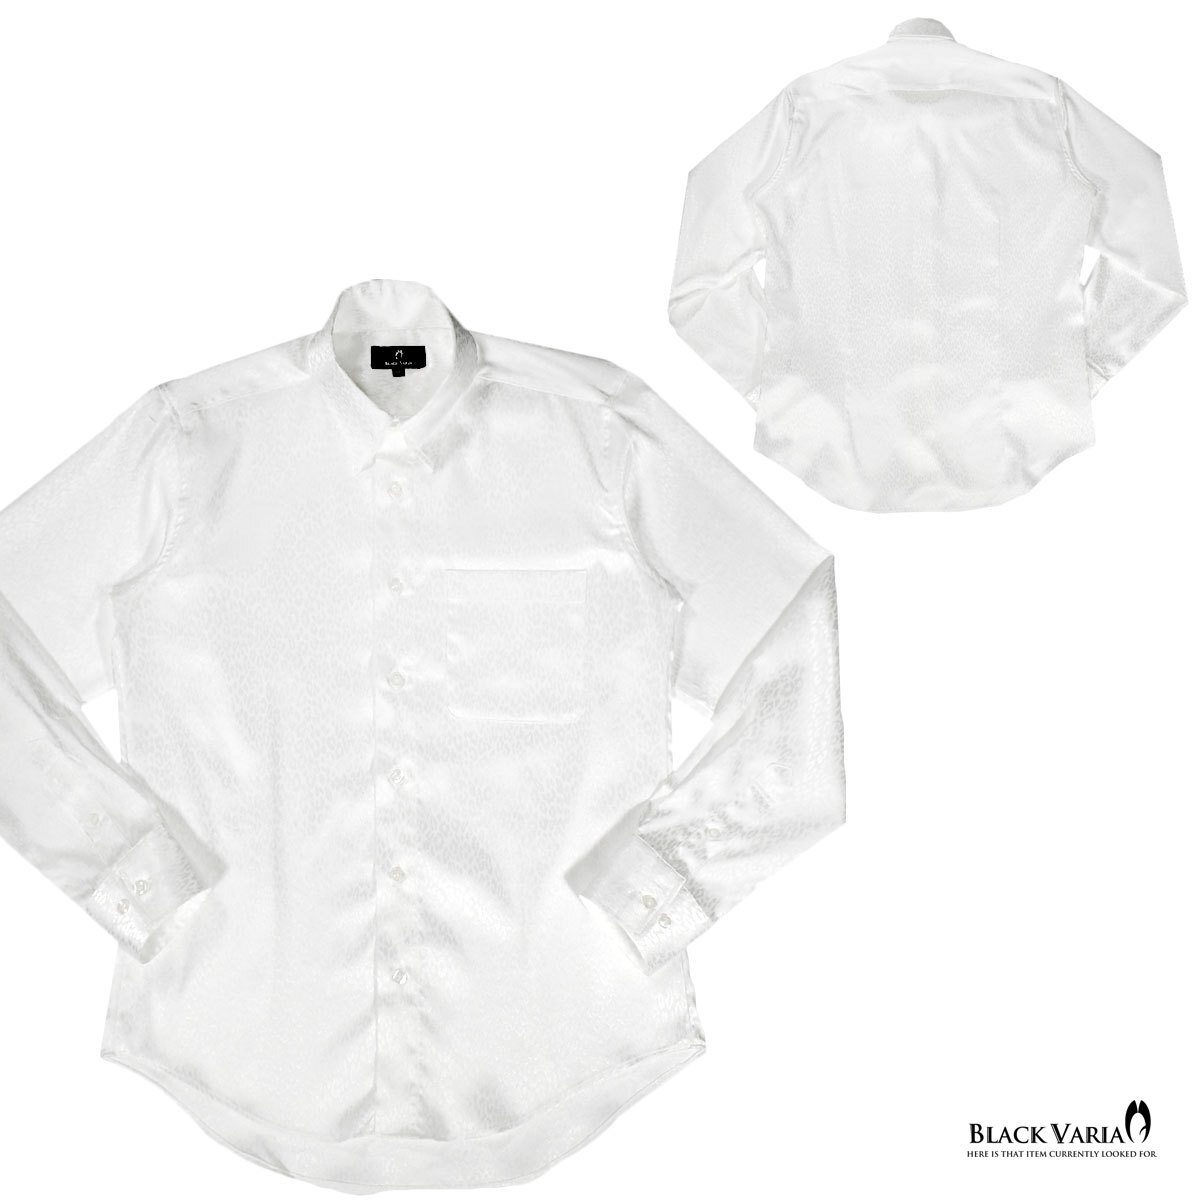 a181710-wh BLACK VARIA ドゥエボットーニ ヒョウ柄 豹 ジャガード レギュラーカラードレスシャツ 日本製 メンズ(ホワイト白) S ステージ_画像6